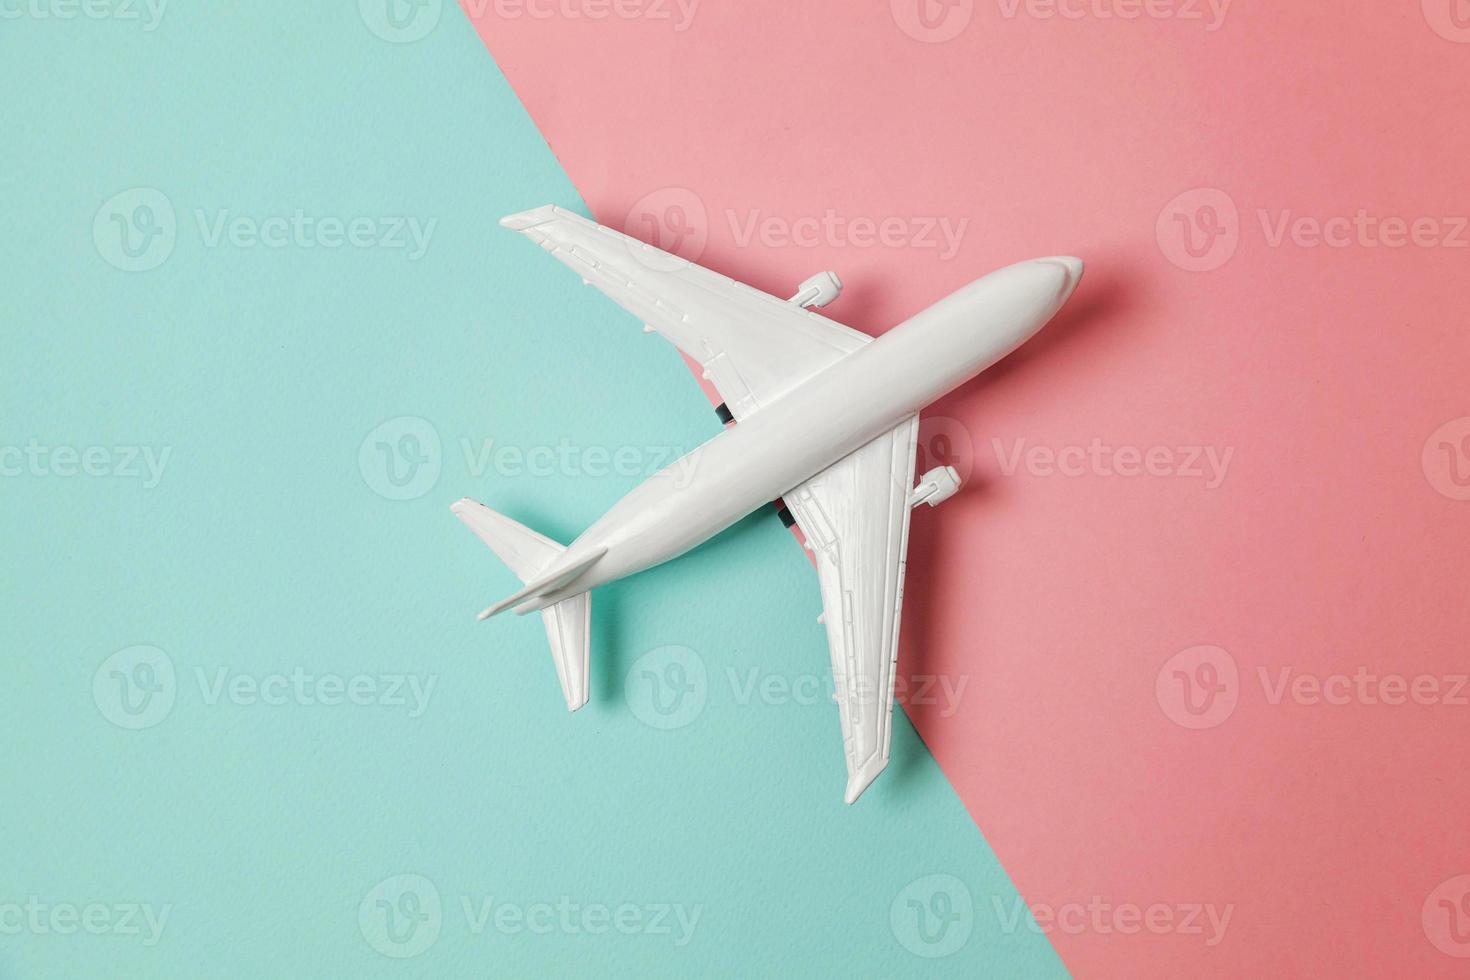 modelo de juguete en miniatura de diseño simplemente plano sobre fondo geométrico de moda de papel de colores pastel azul y rosa. viaje en avión vacaciones verano fin de semana aventura en el mar concepto de viaje. foto